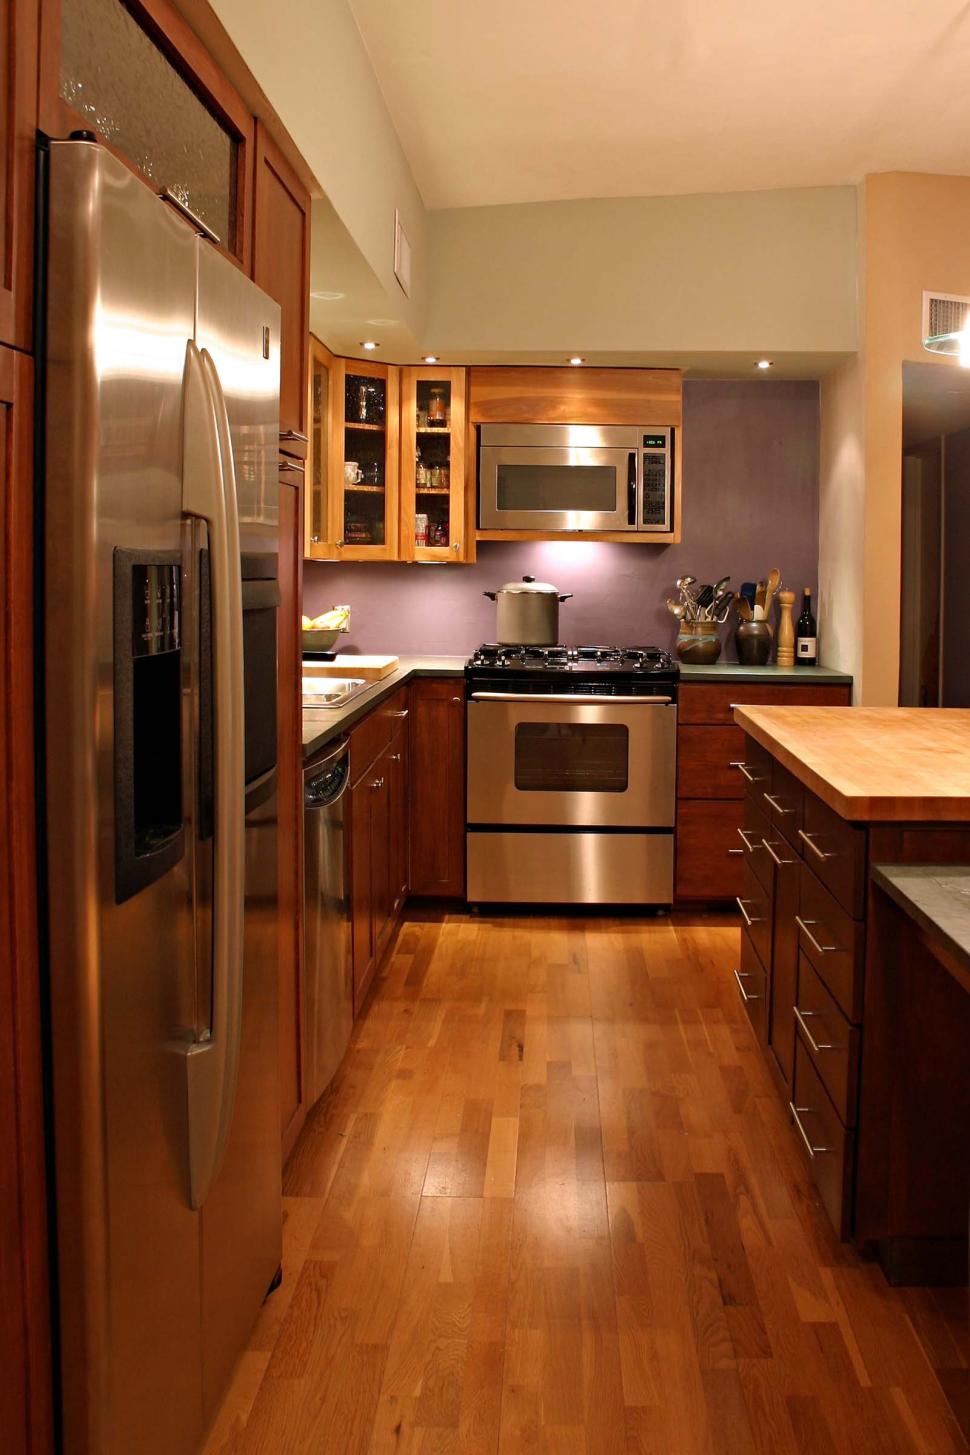 Waterproof your kitchen floor; upgrade to Laminate. - Colors Wood Floors